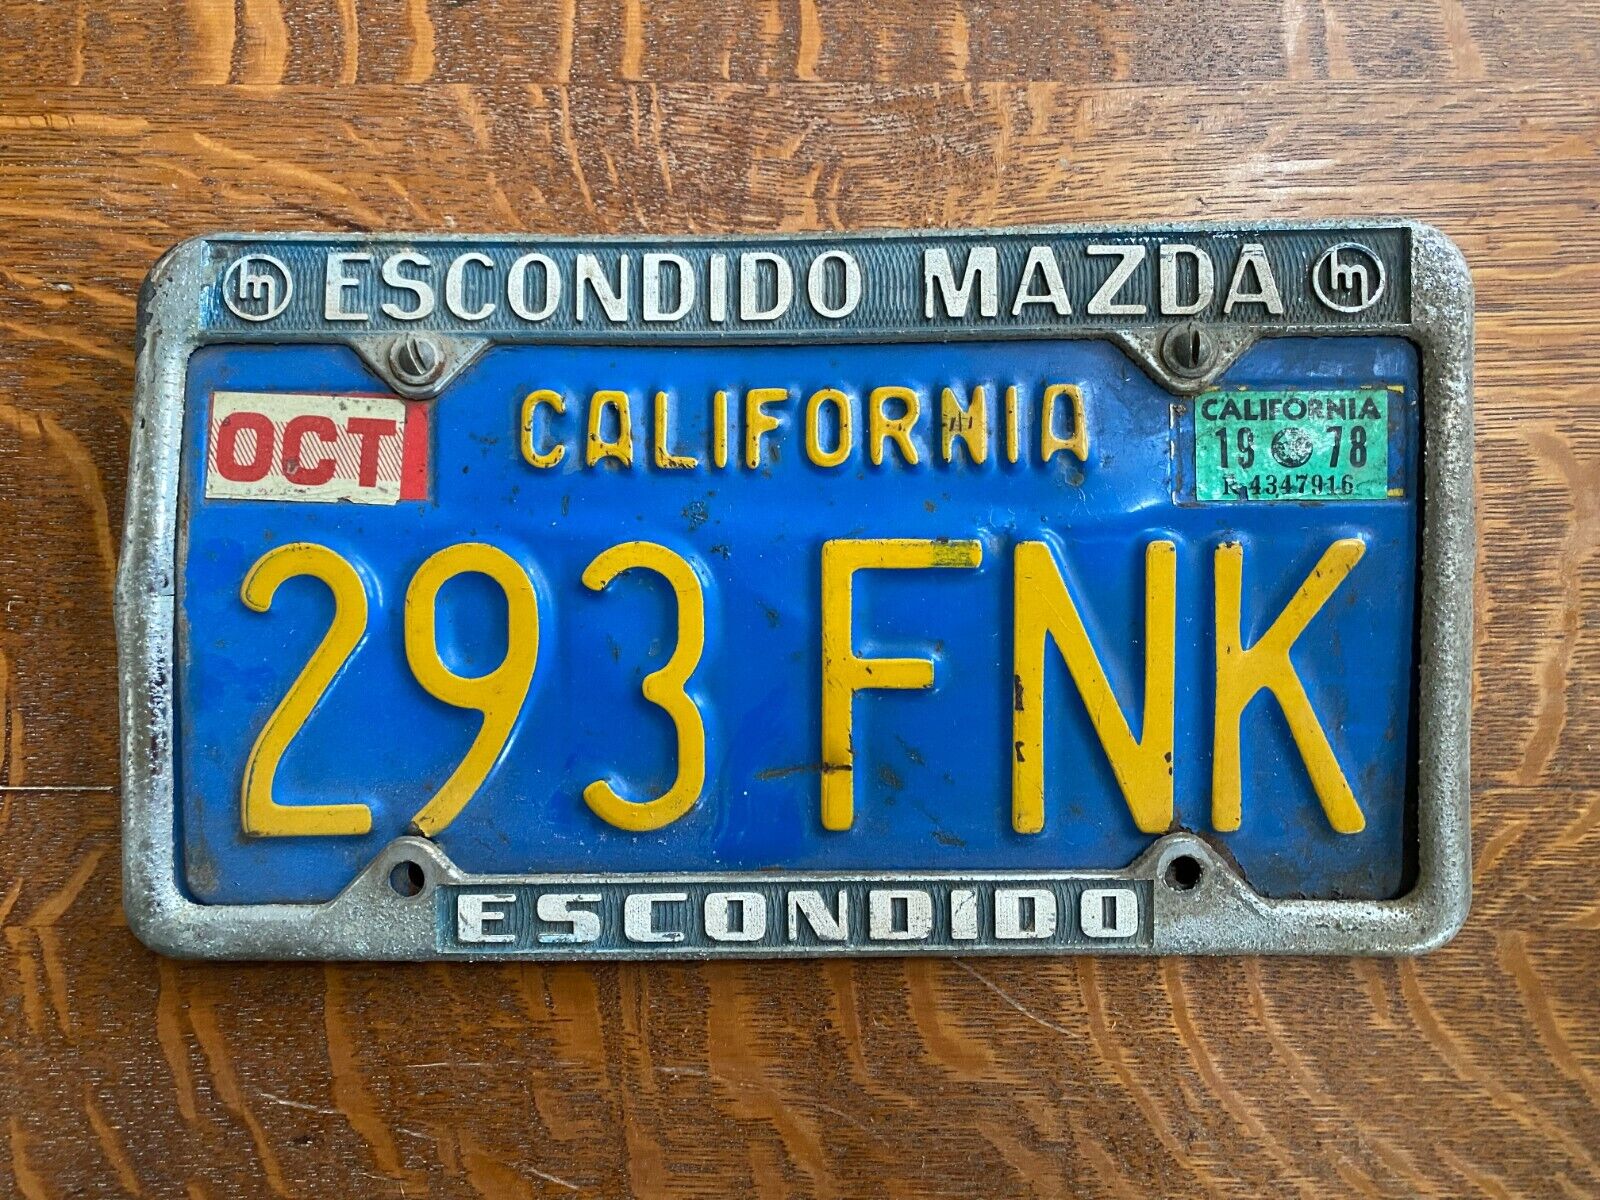 Vintage Metal Escondido California Mazda Dealership Dealer License Plate Frame